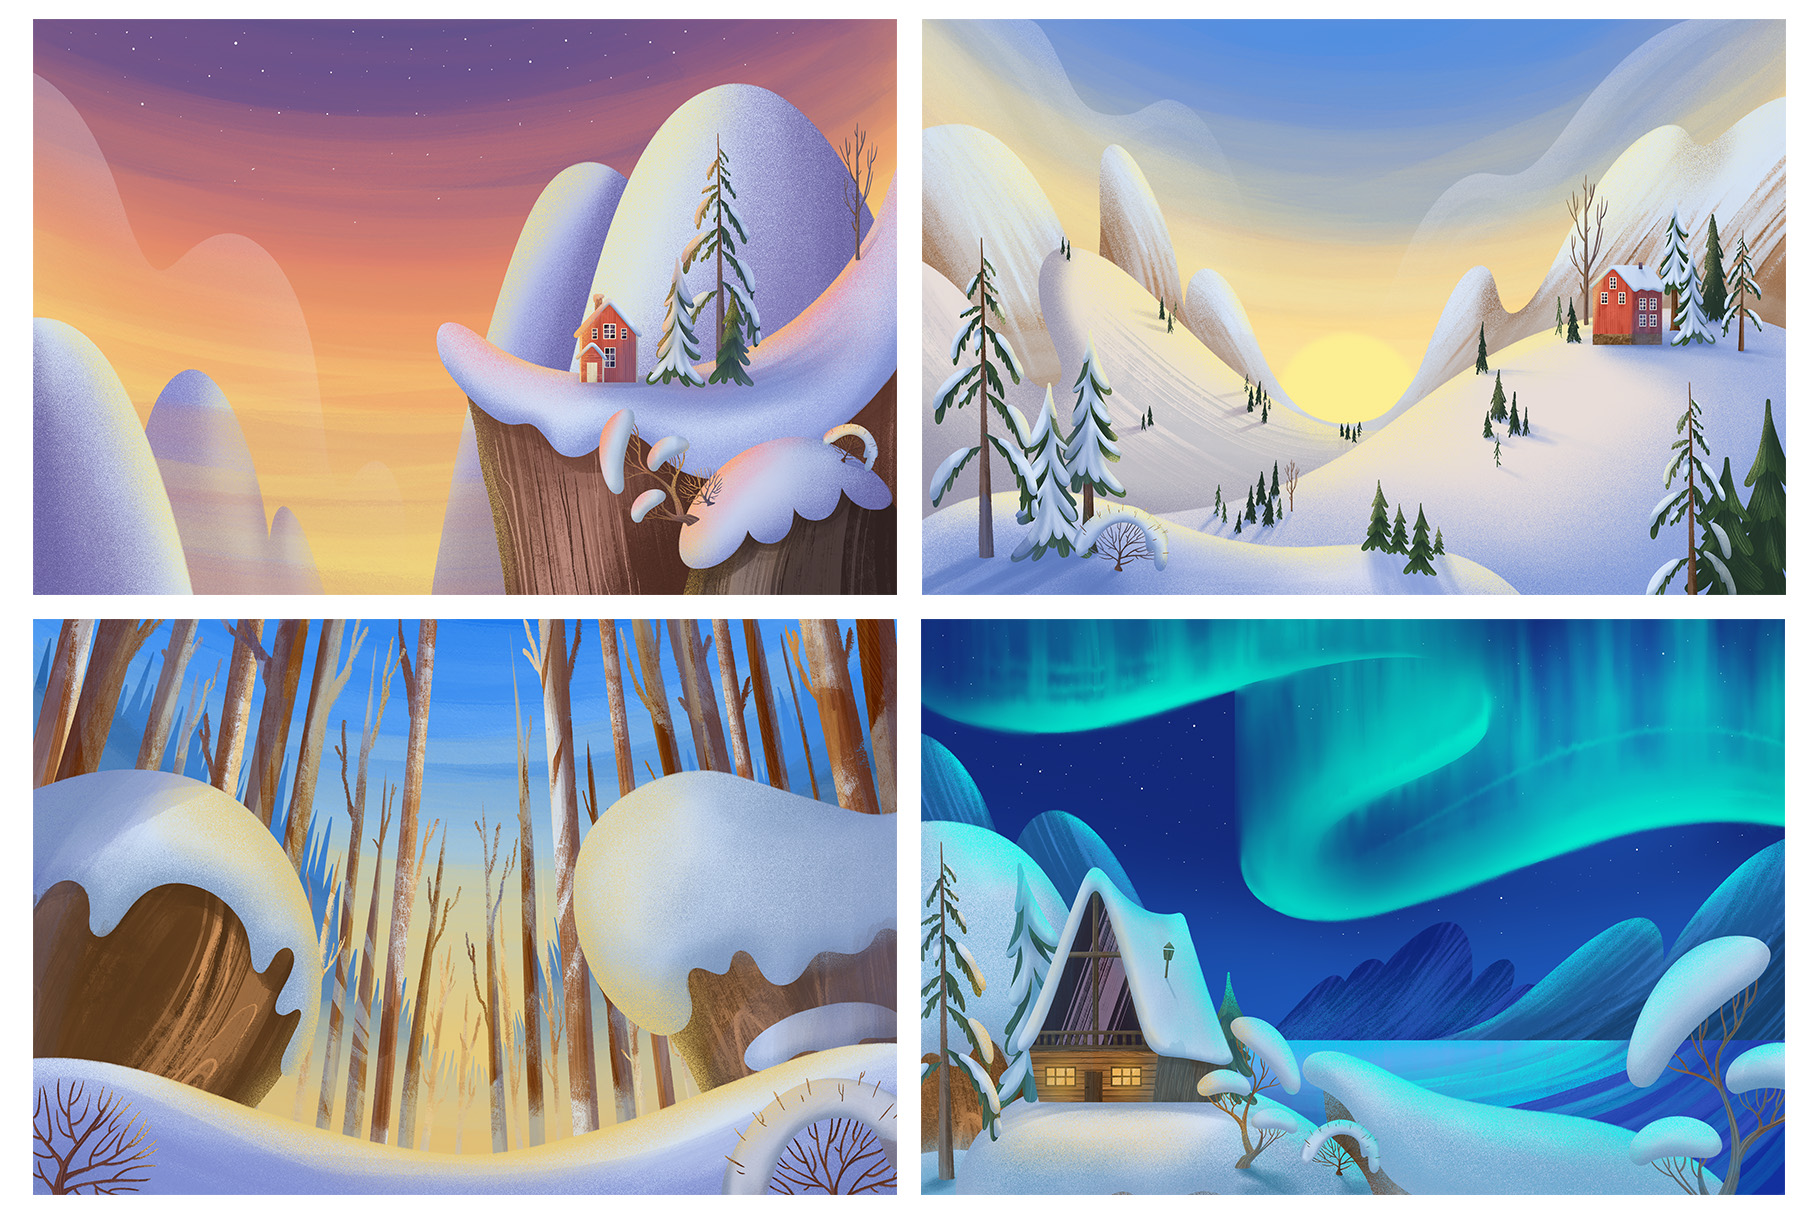 Winter Landscape Illustration Set (PSD, PNG, JPEG Format)